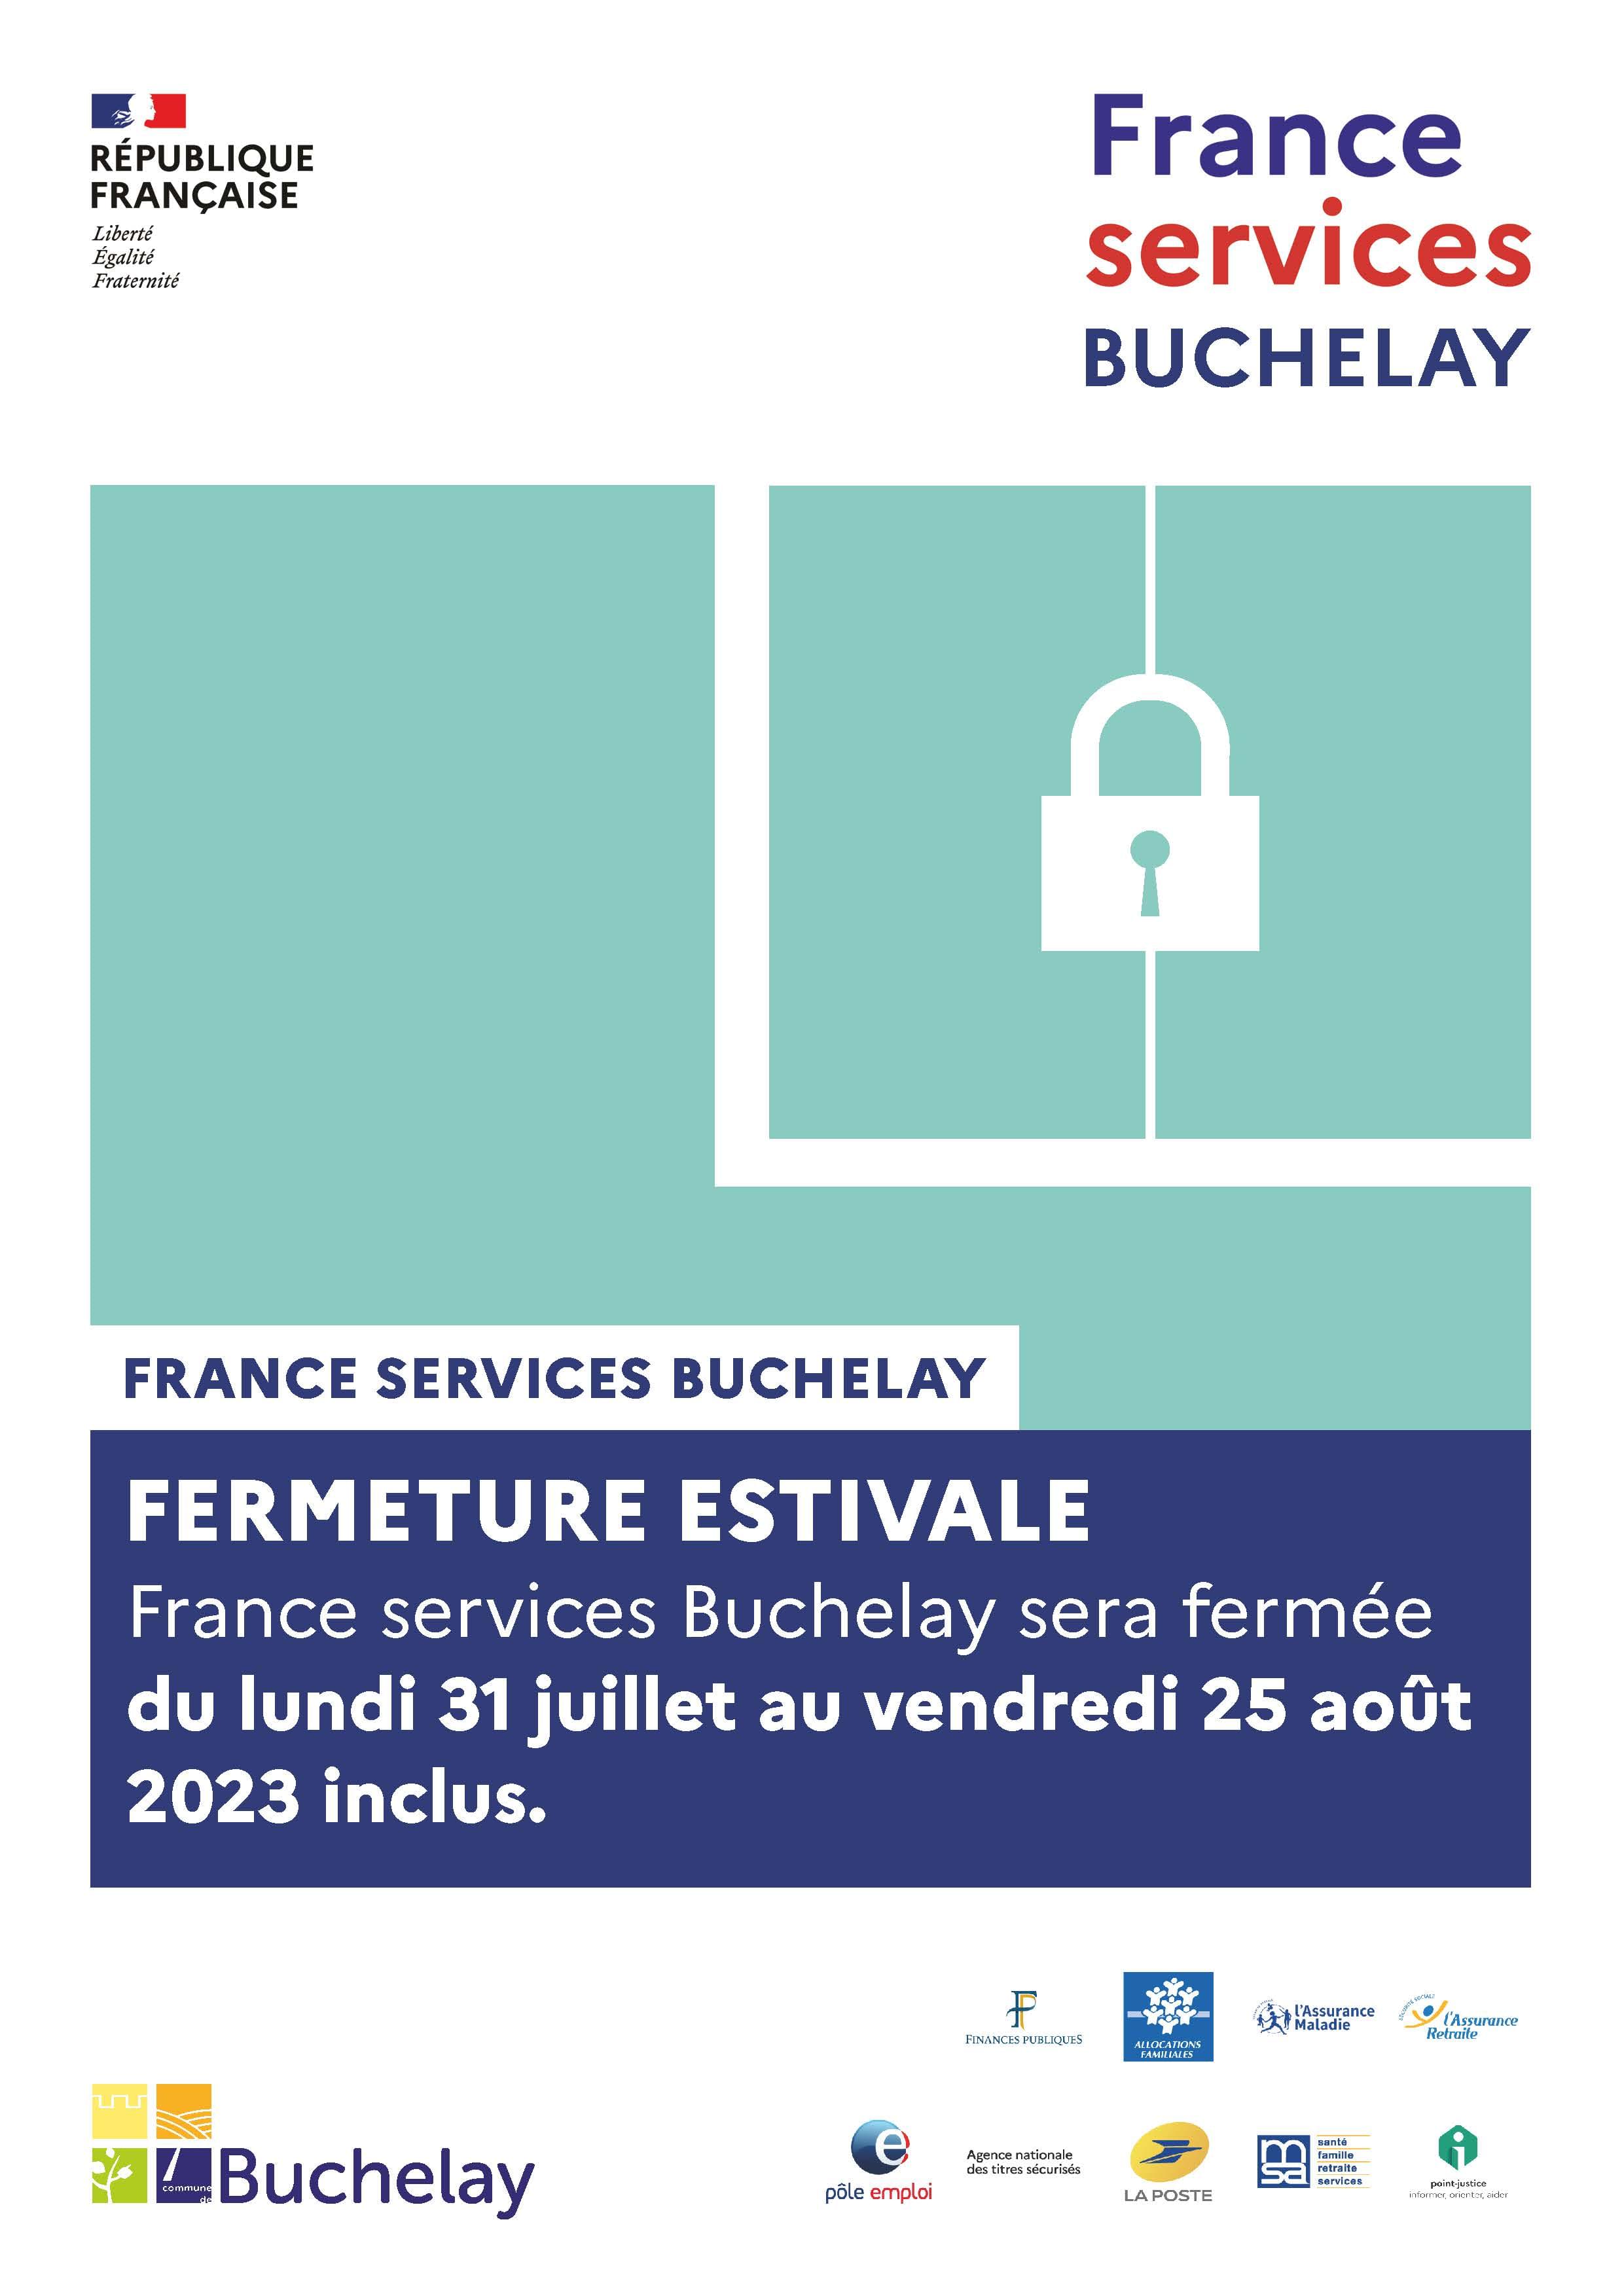 France services Buchelay fermeture estivale 2023